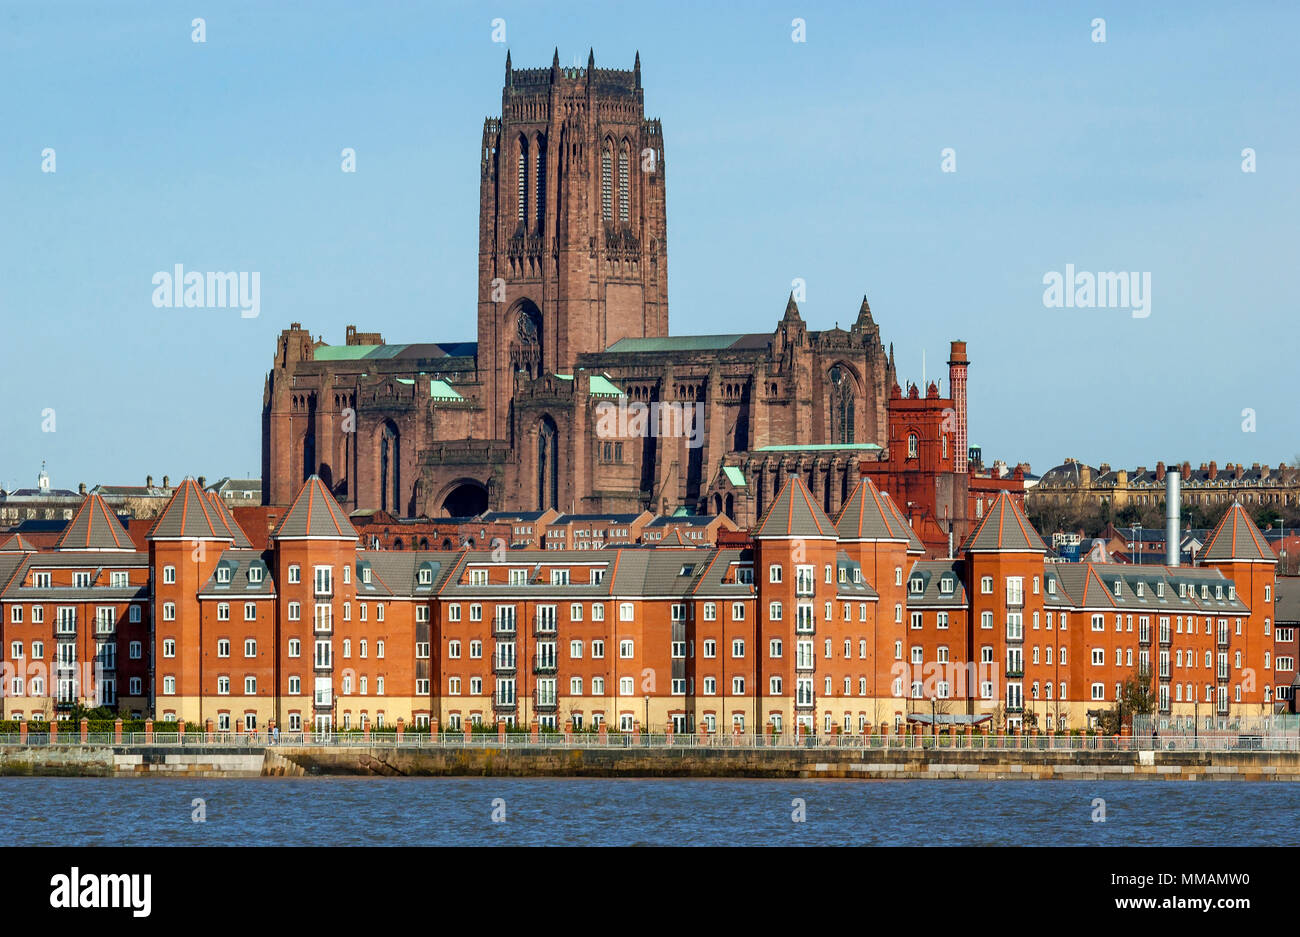 Liverpool Anglikanische Kathedrale überragt der riverfront Gehäuse Apartments. Stockfoto